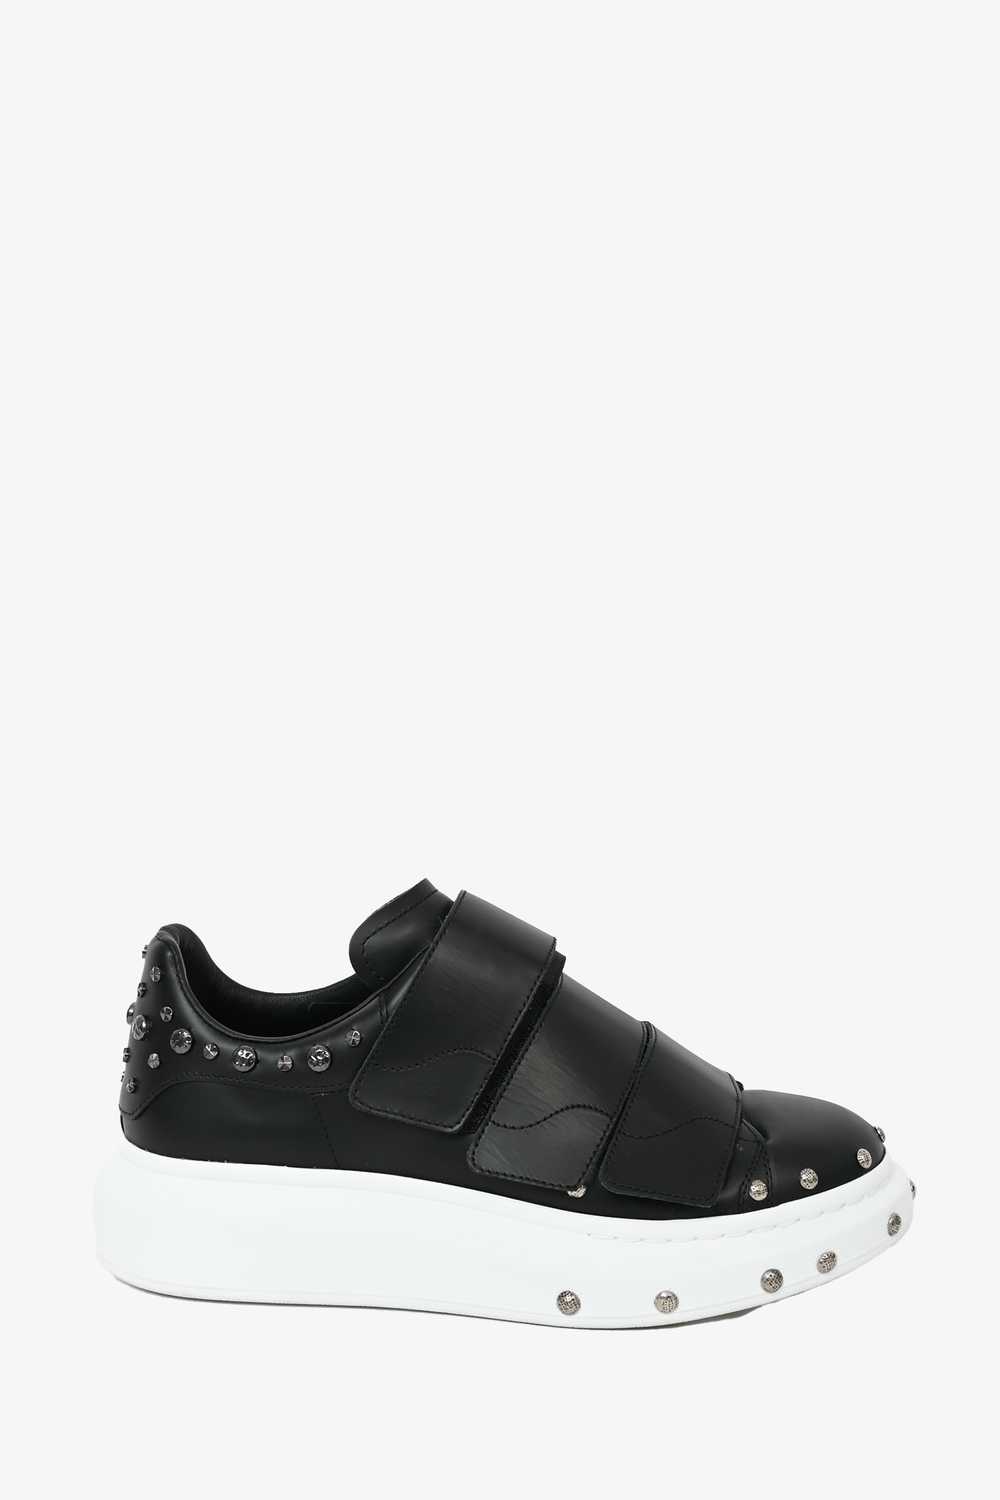 Alexander McQueen Black Leather Velcro Sneakers S… - image 1